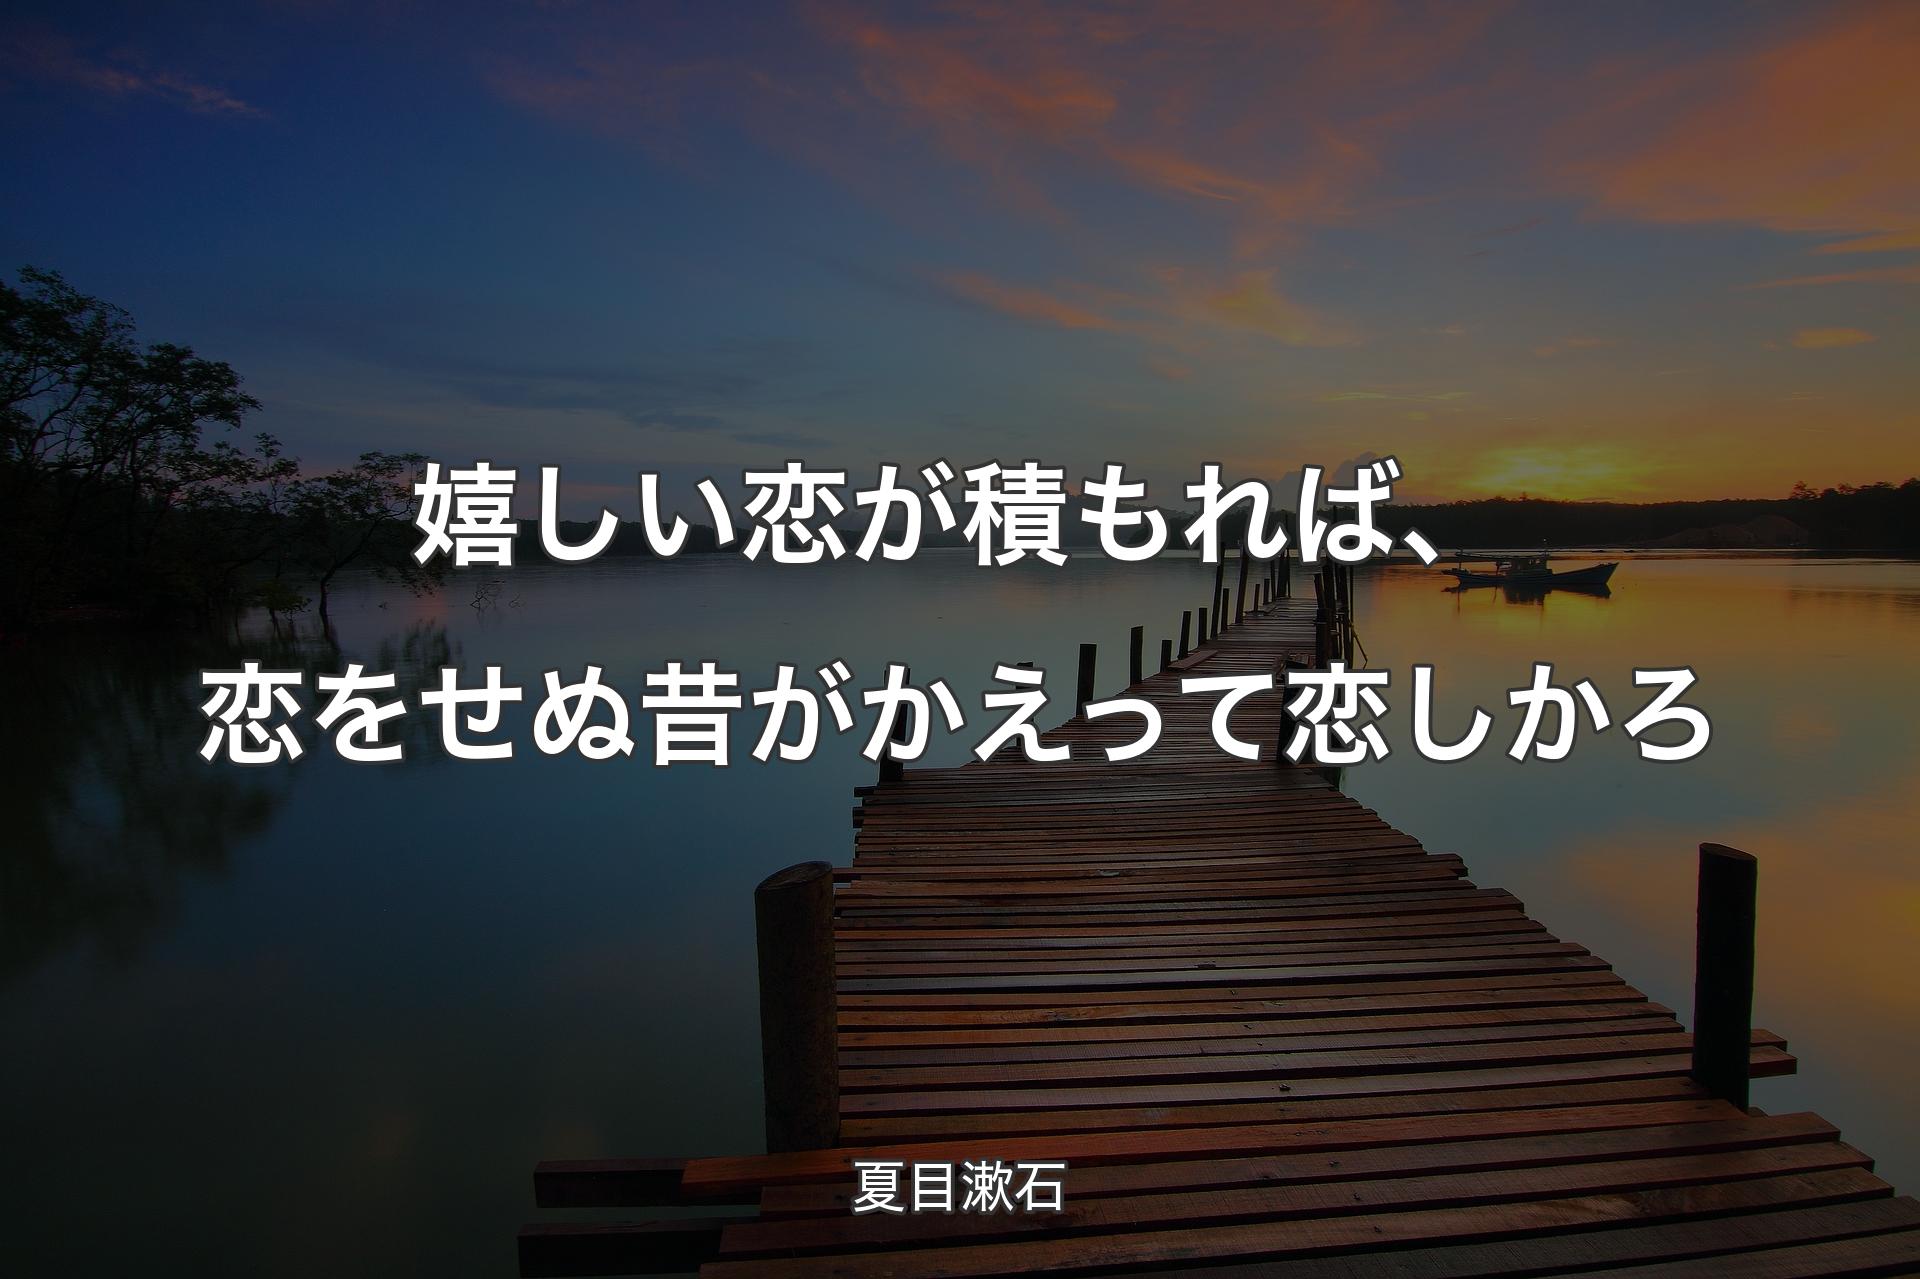 【背景3】嬉しい恋が積もれば、恋をせぬ昔がかえって恋しかろ - 夏目漱石